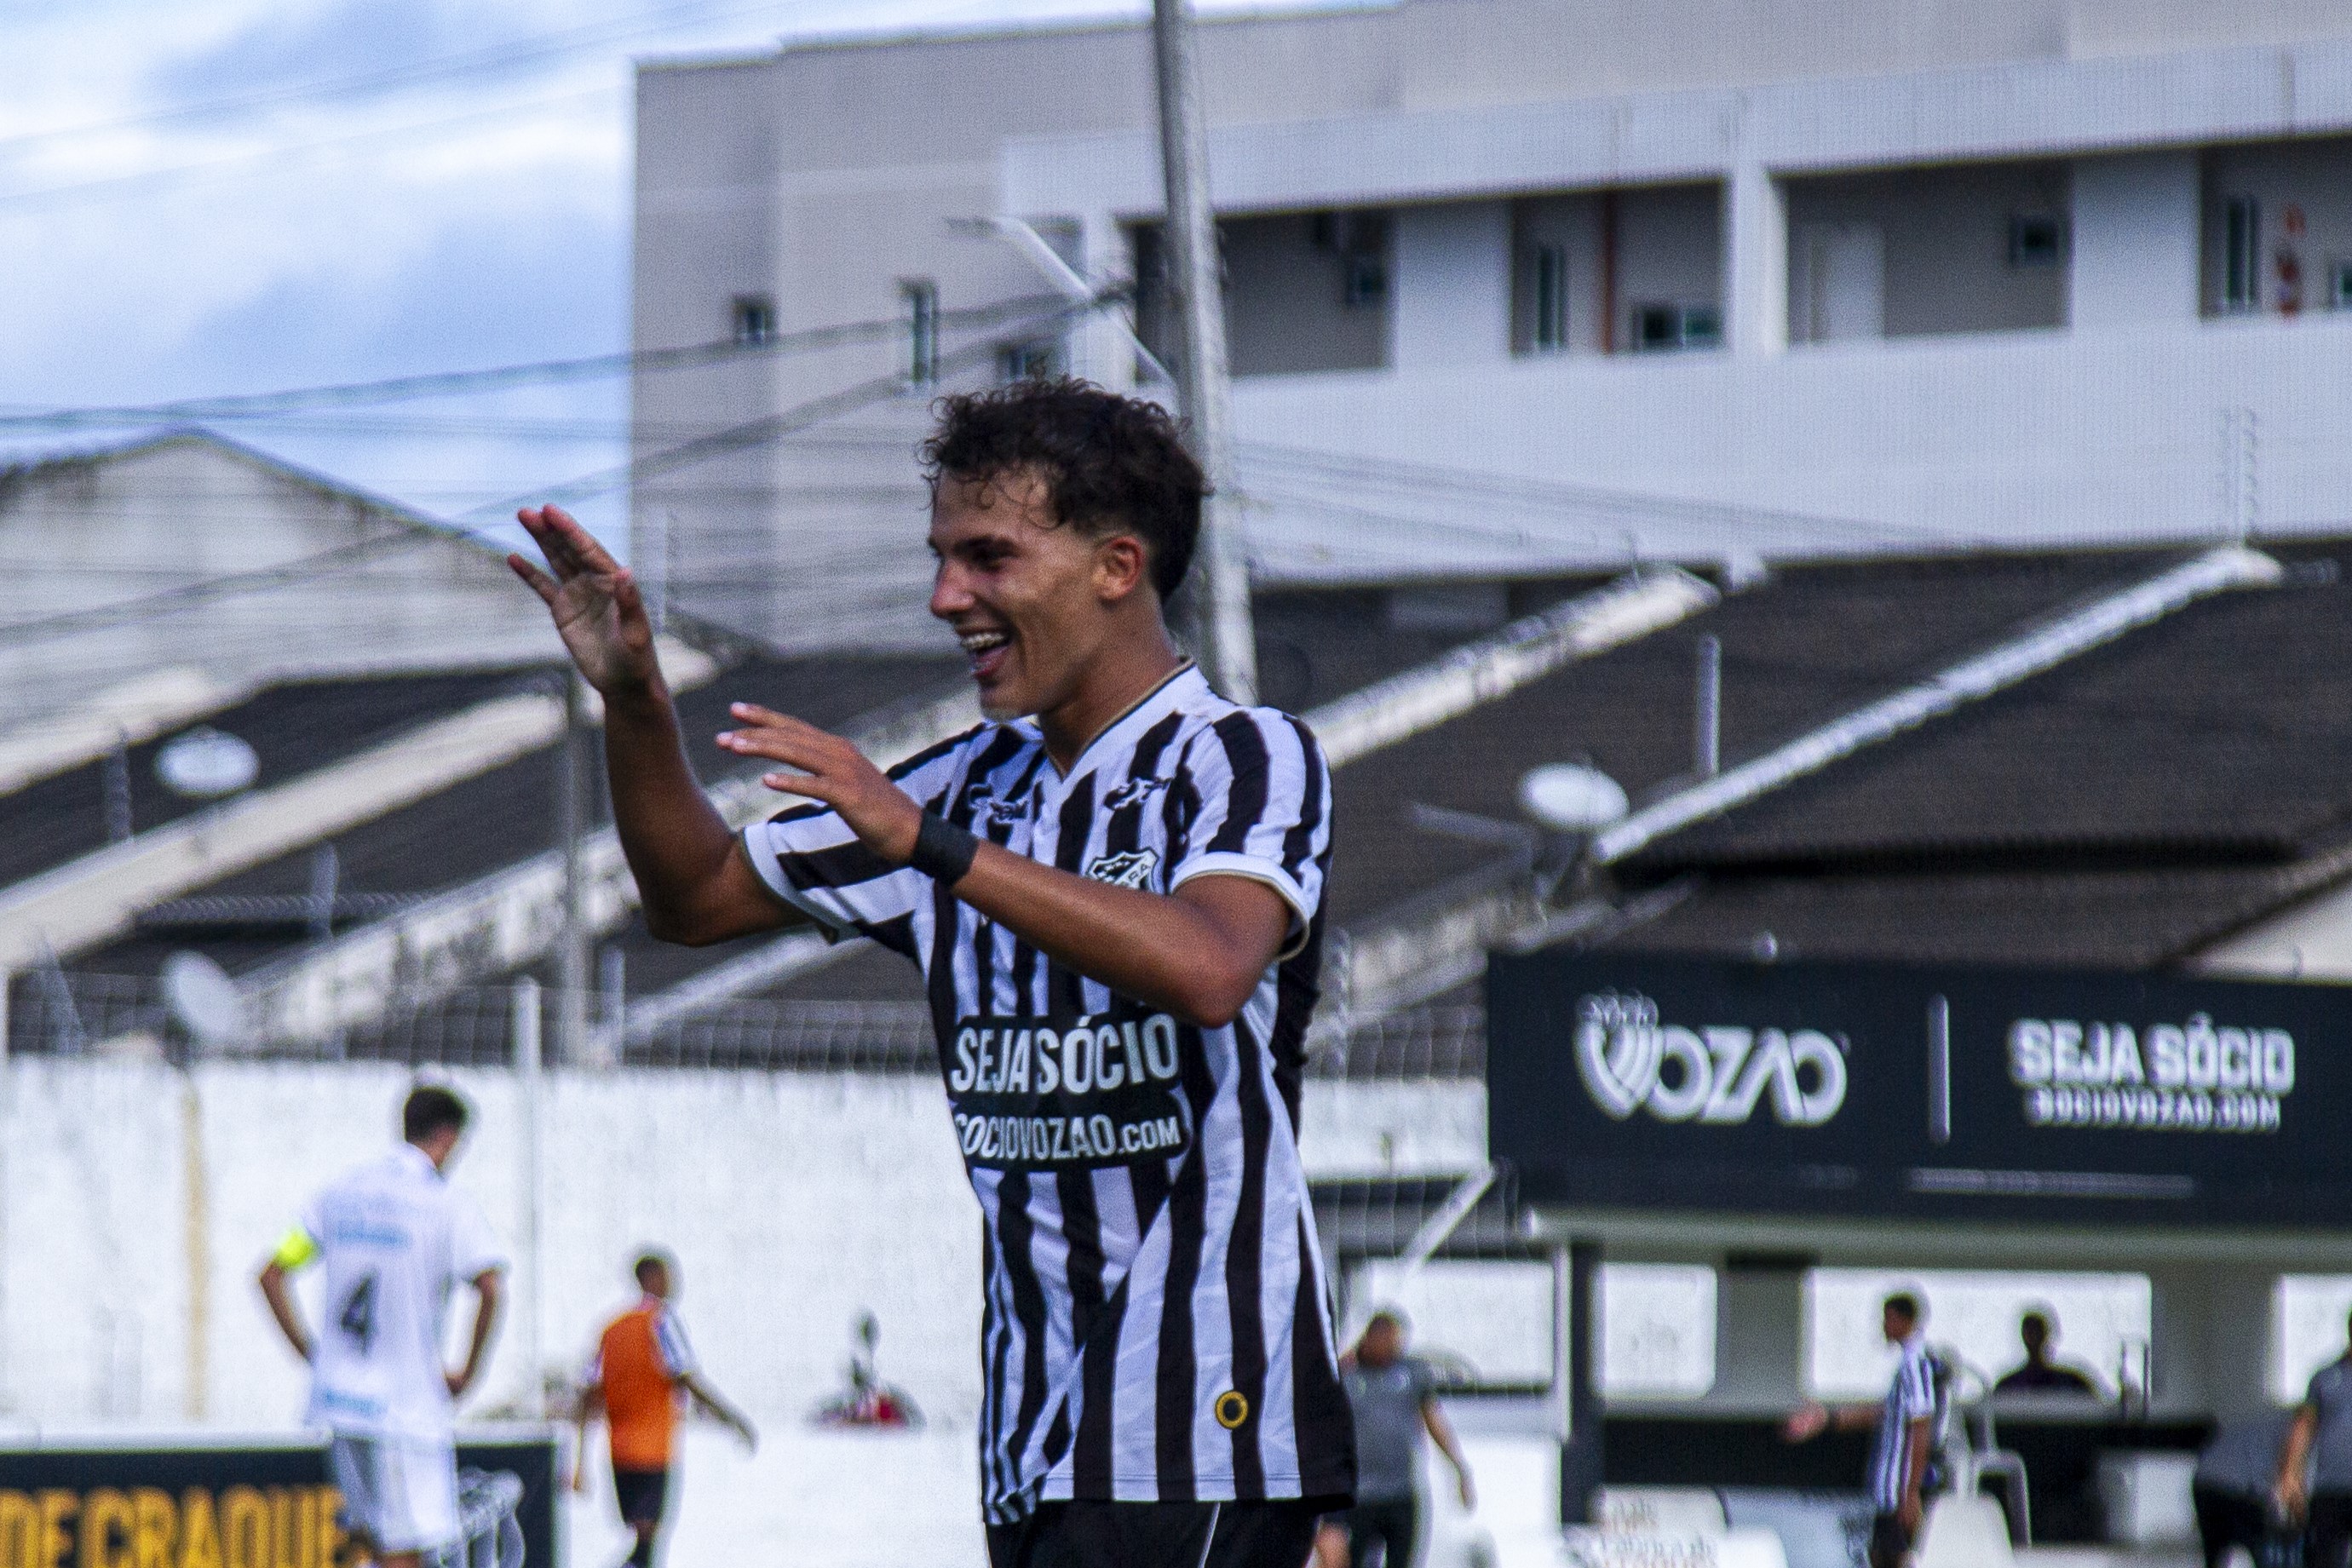 Sub-17: Autor de dois gols, Bortolluci comemora a estreia positiva diante do Grêmio/RS no Brasileiro